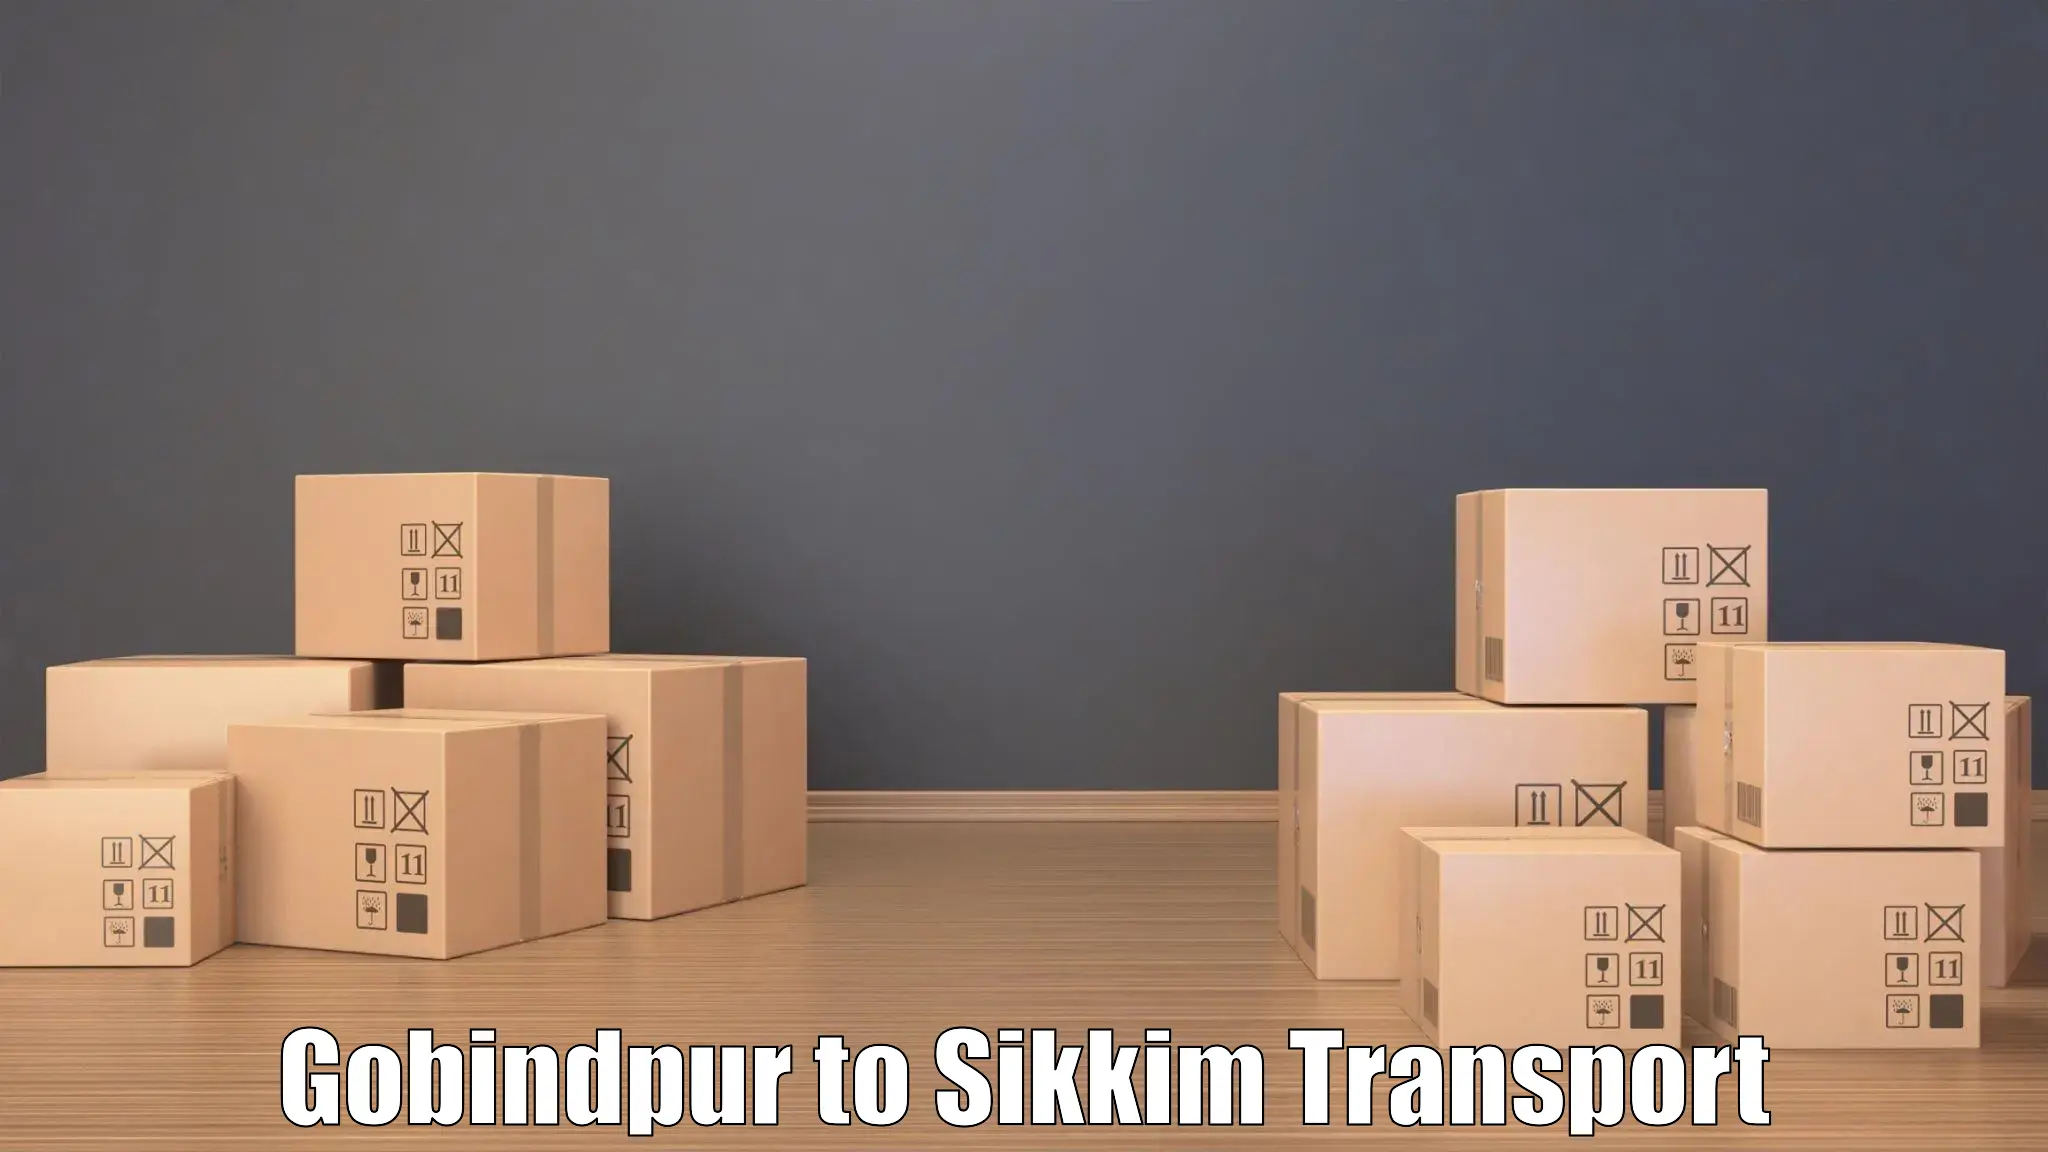 Furniture transport service Gobindpur to Geyzing